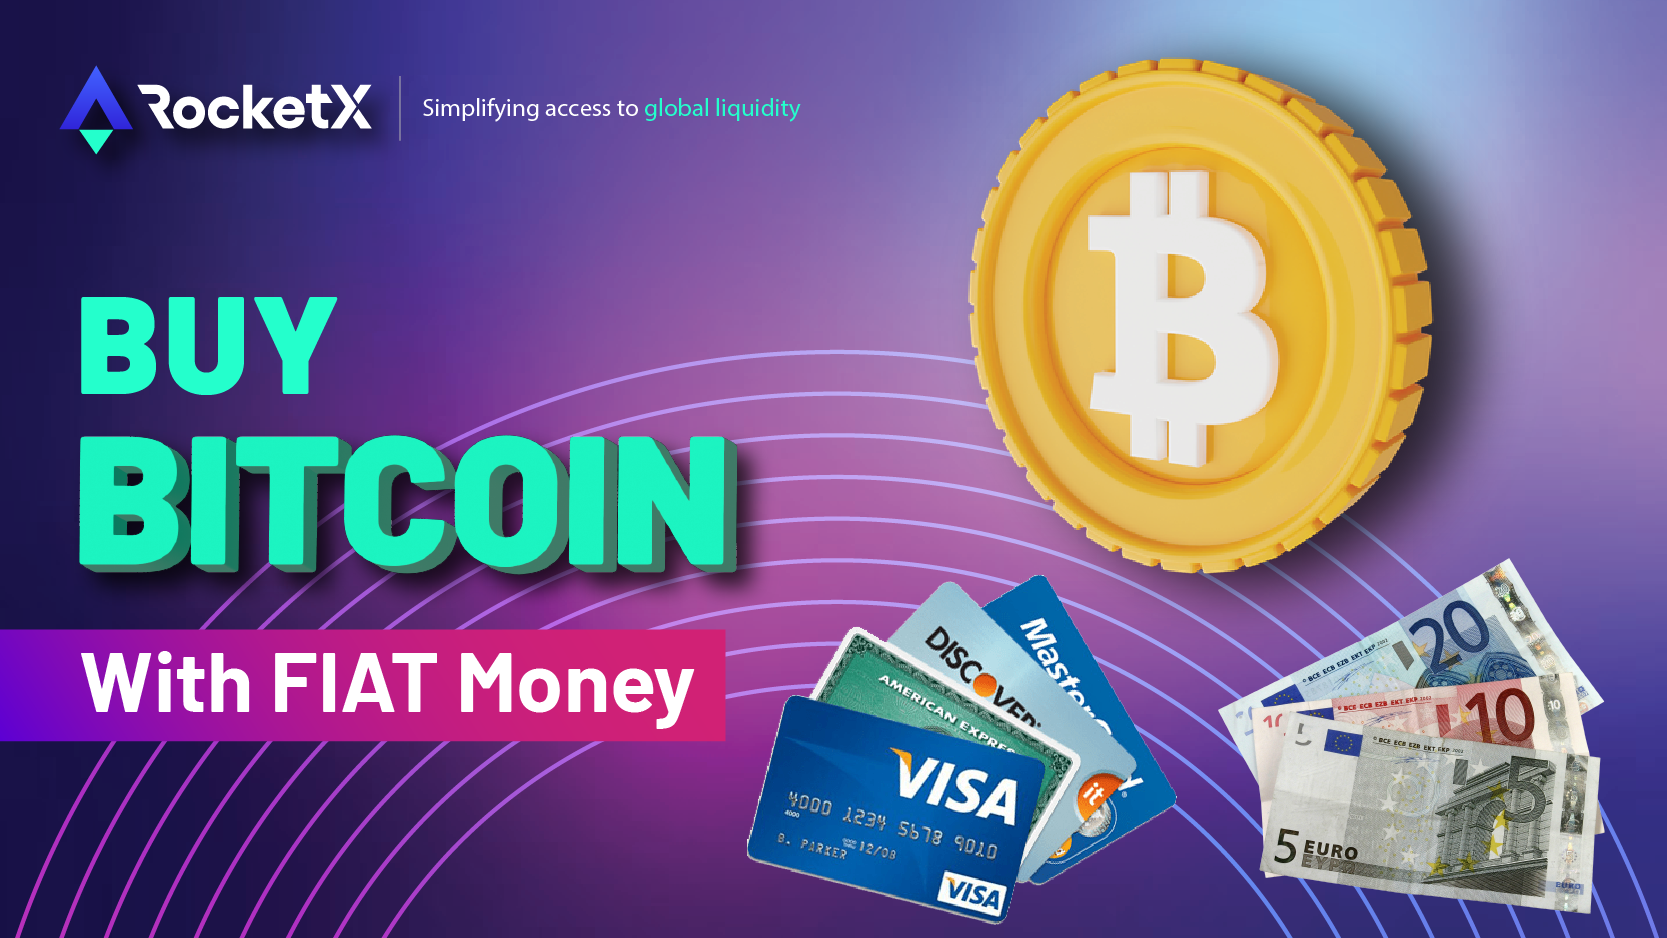 Buy Bitcoin with Fiat Money via RocketX